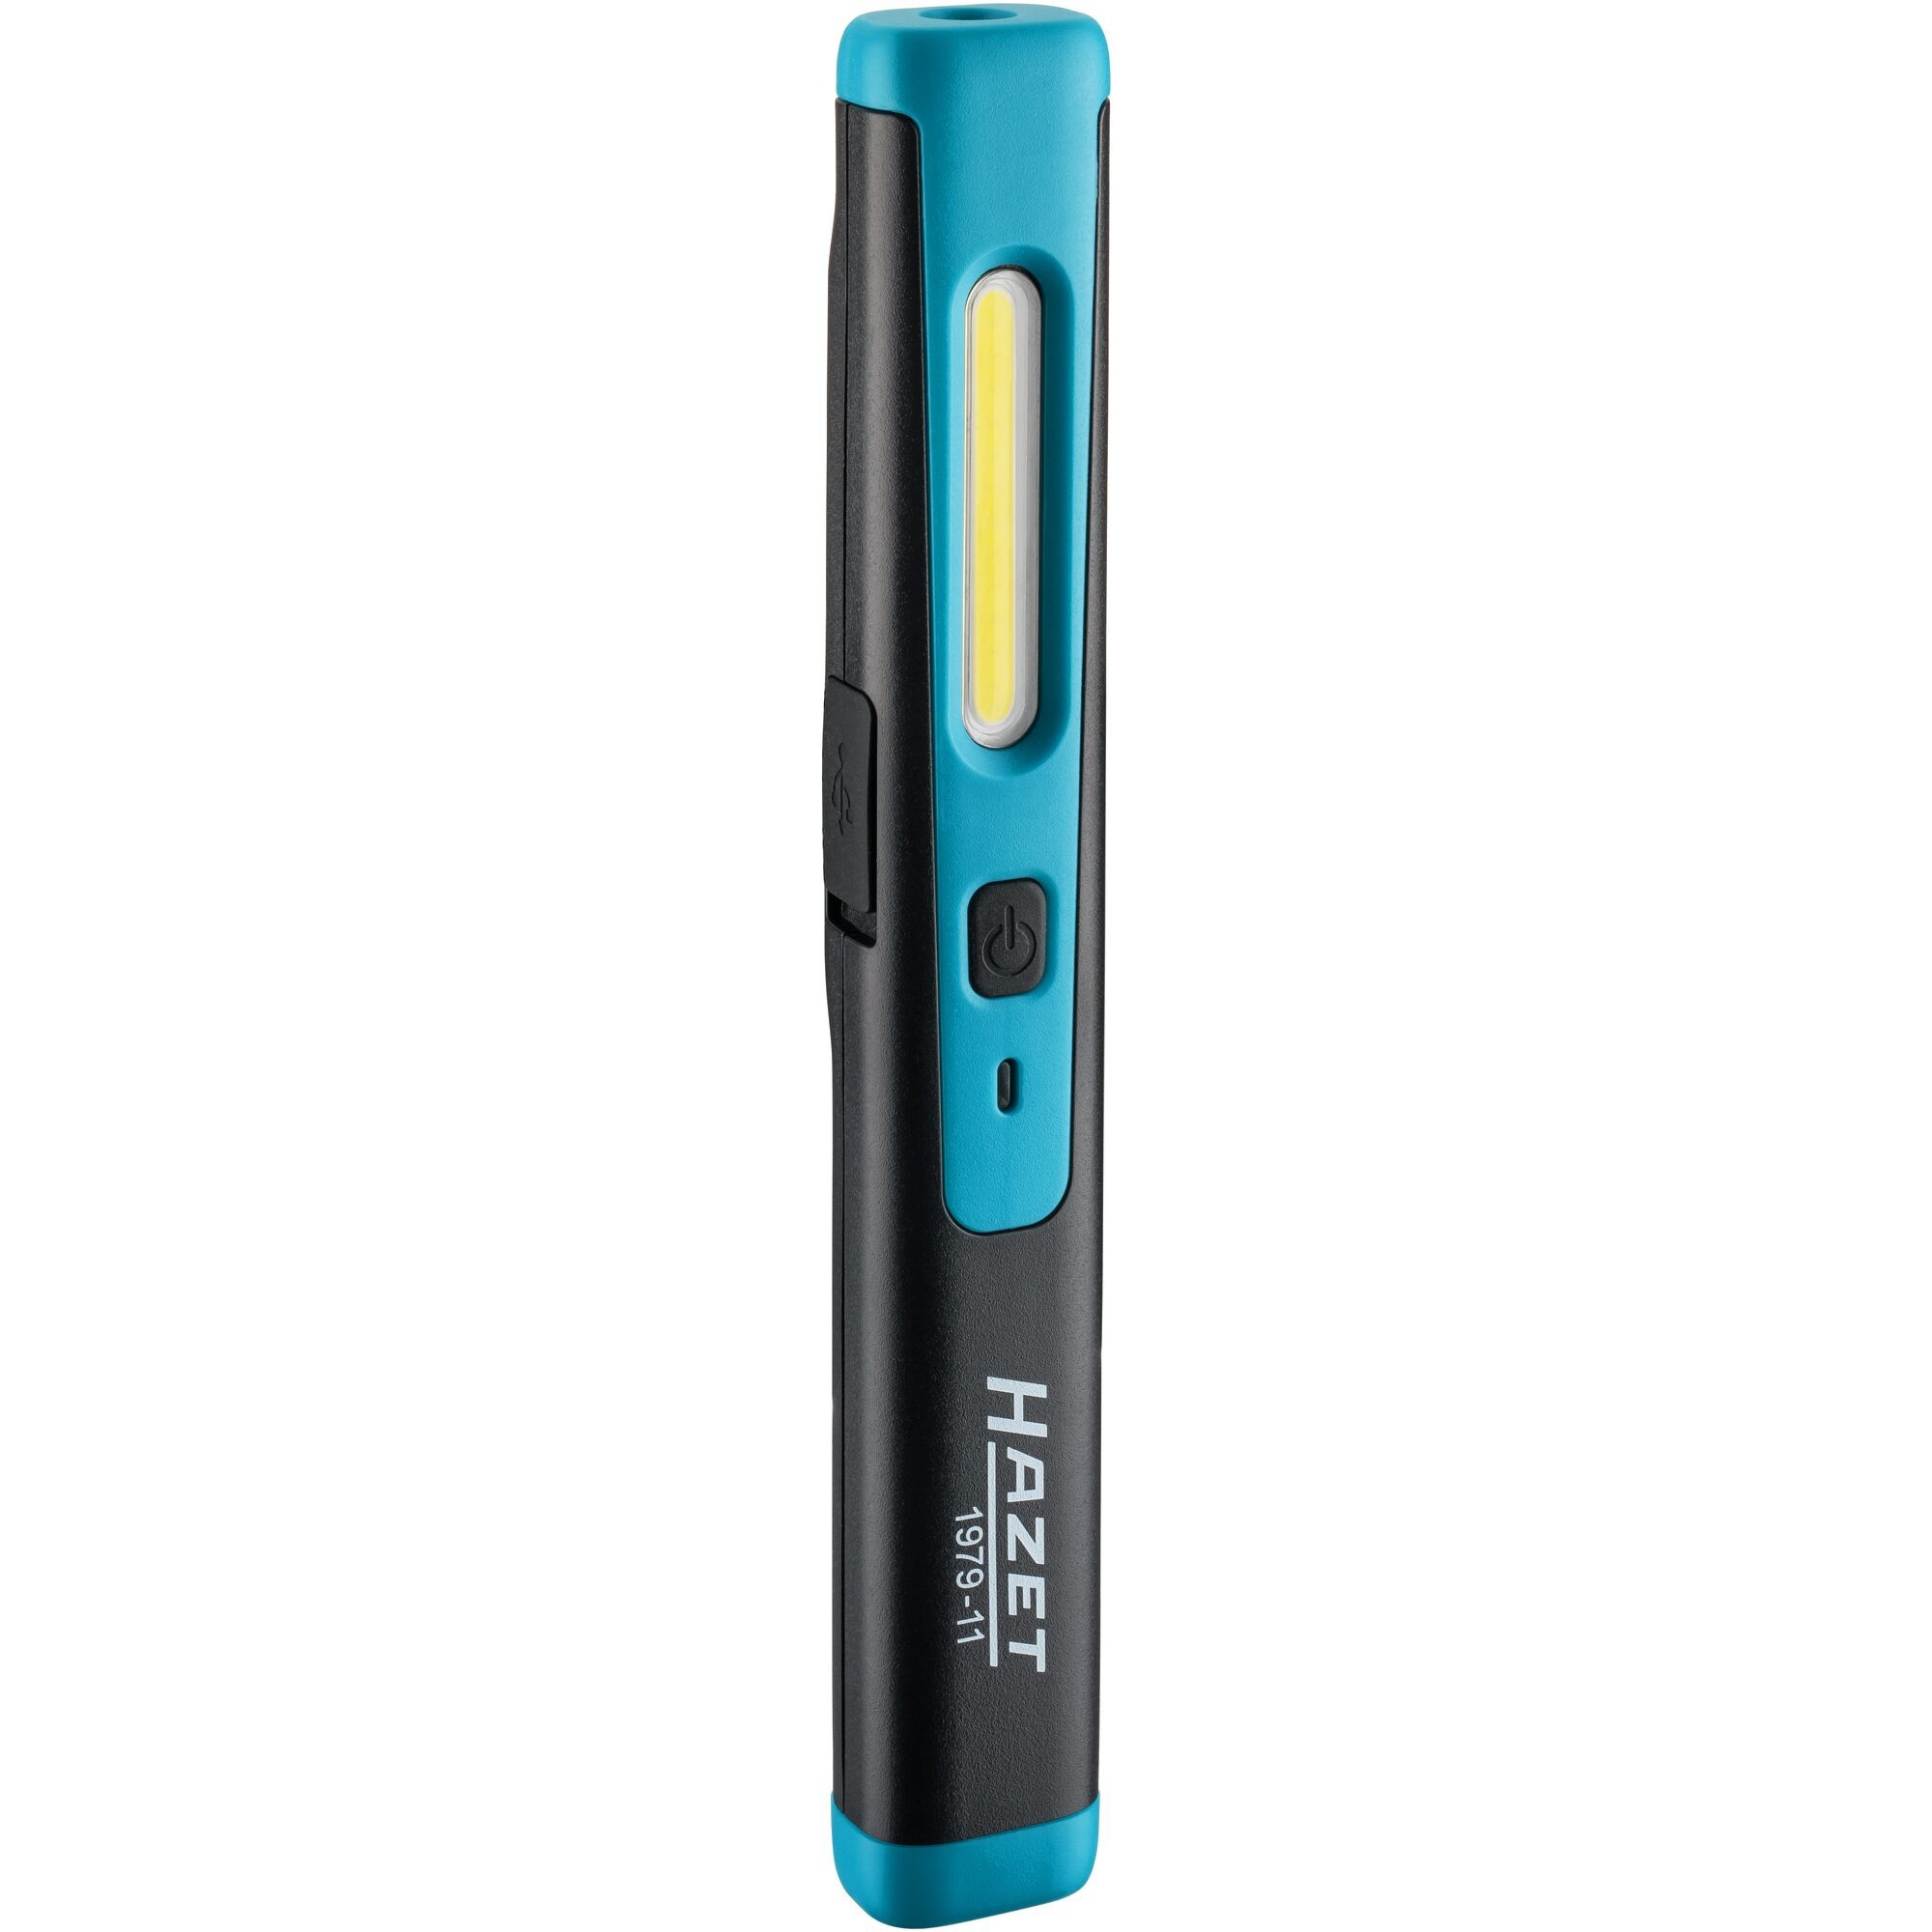 Image of Alternate - LED Pen Light, LED-Leuchte online einkaufen bei Alternate